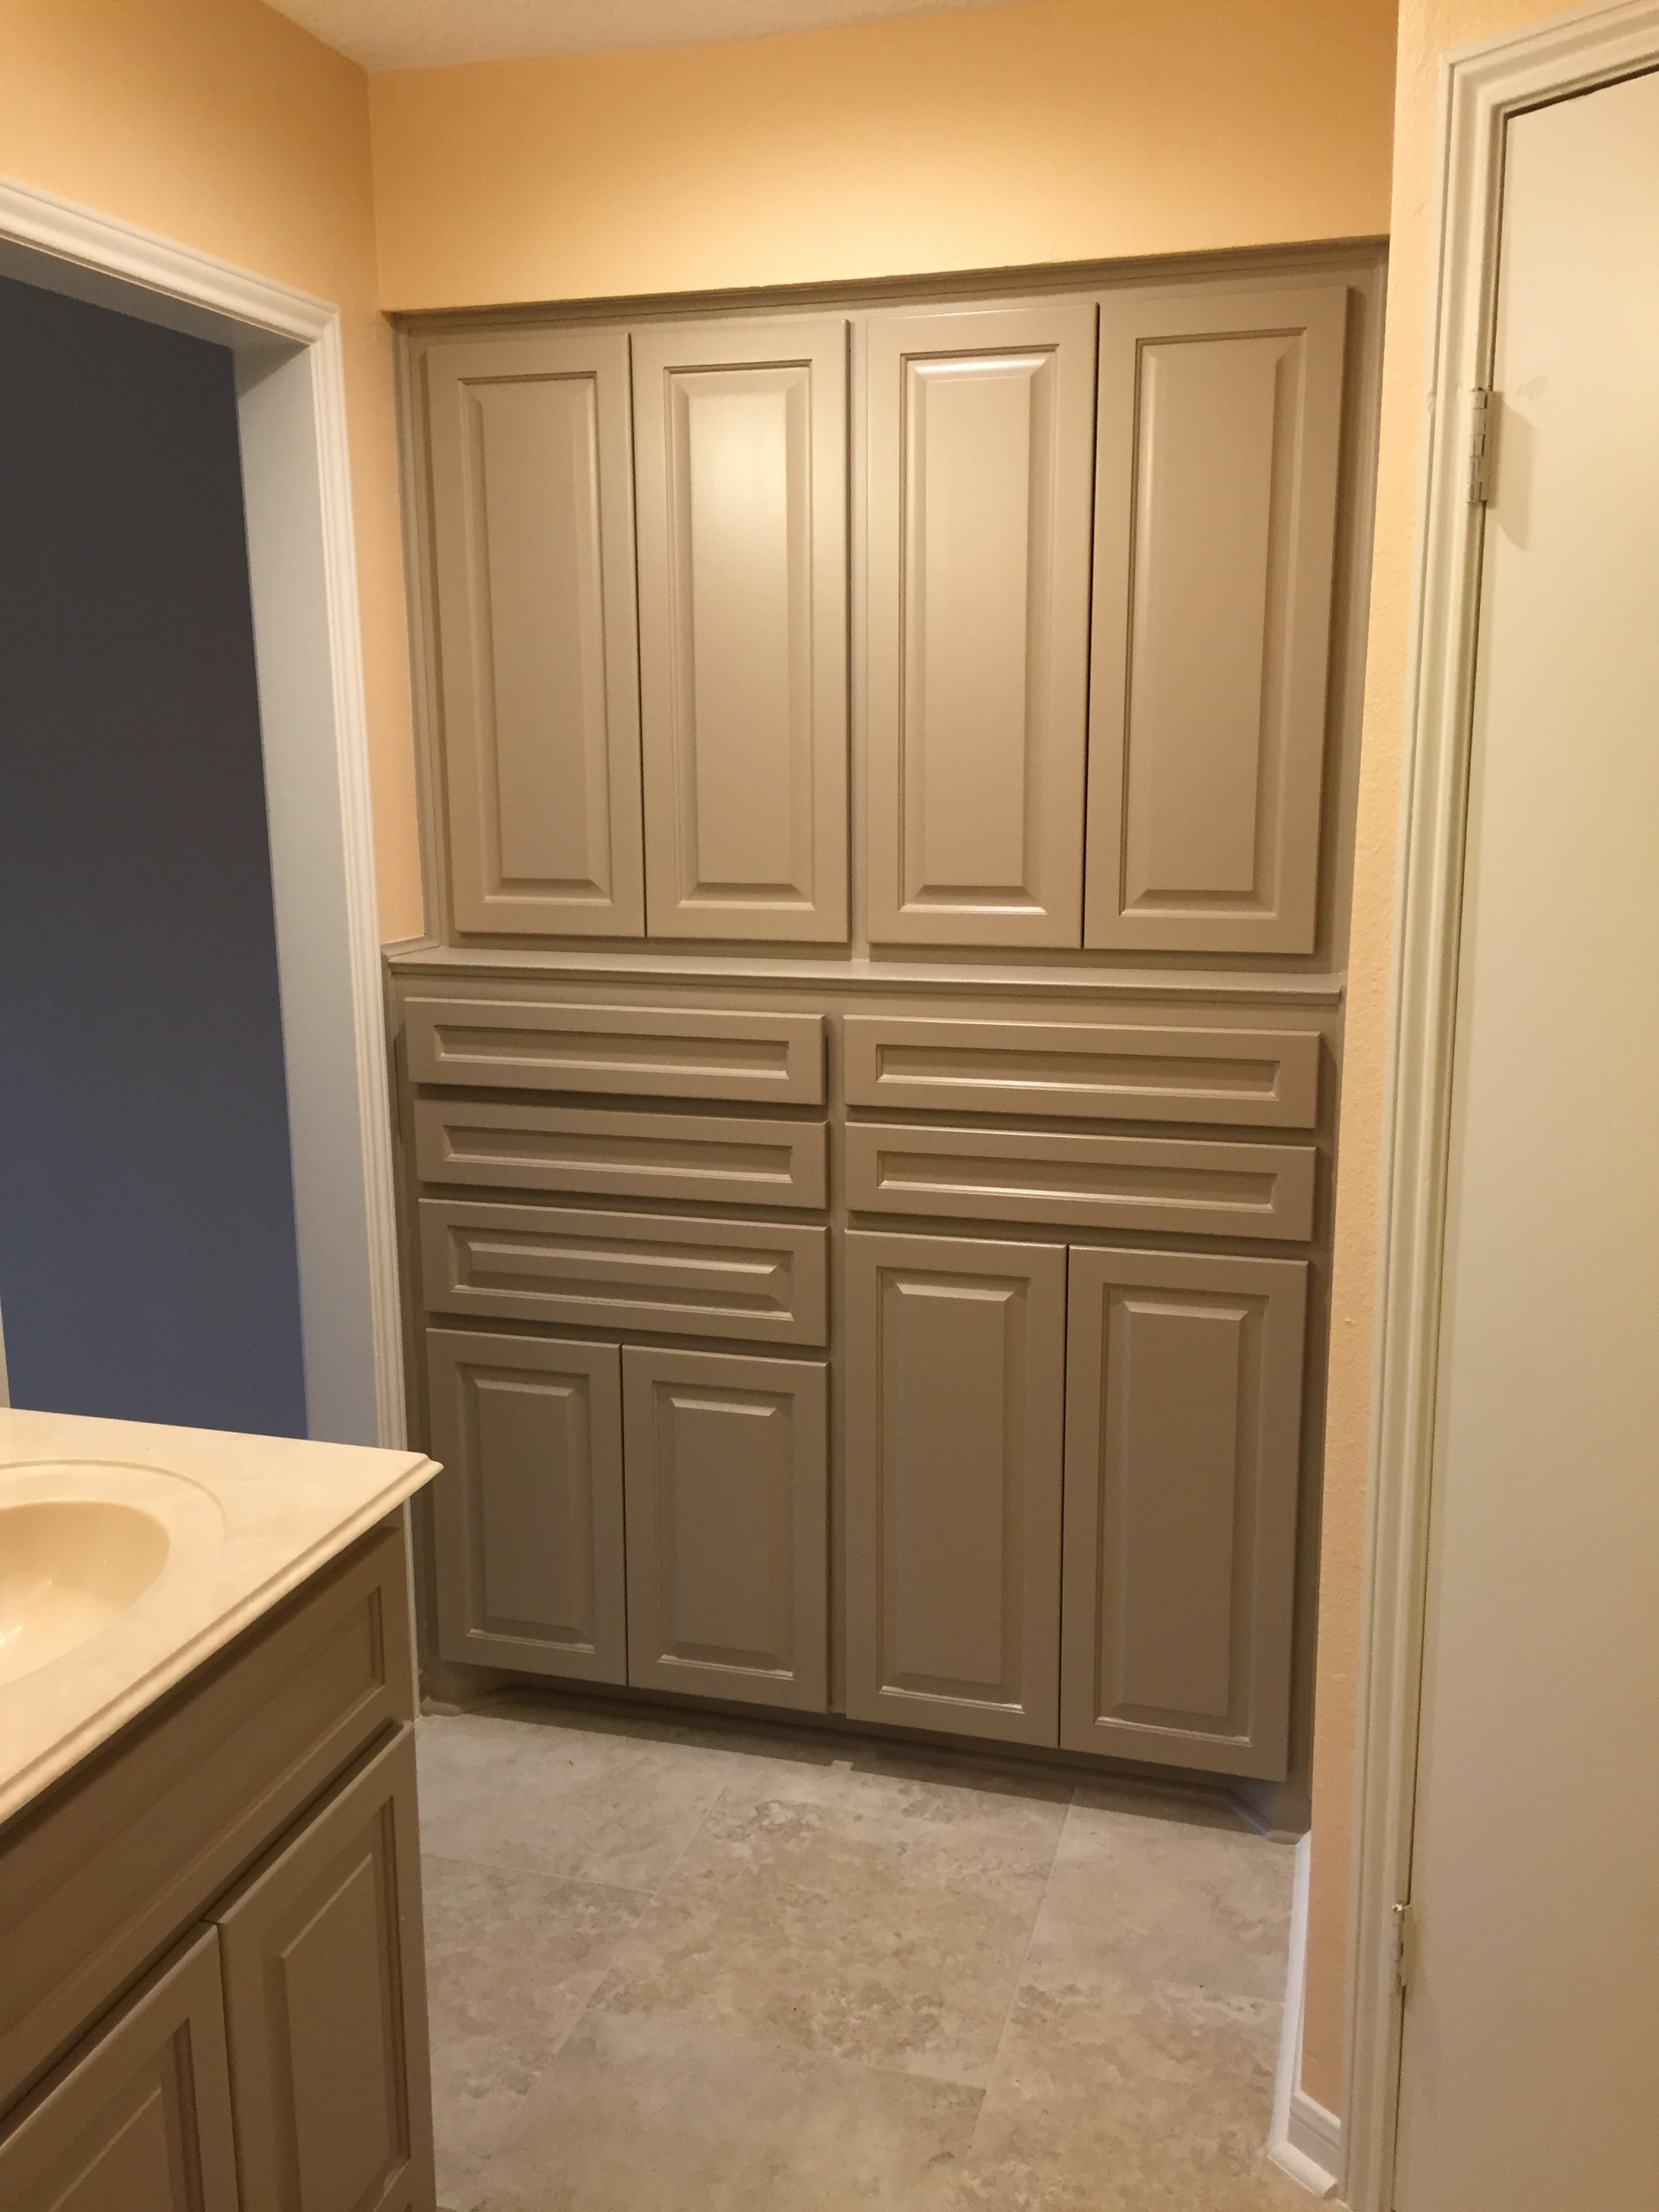 Sequoia - Kitchen/Living room/Master Bedroom-Bathroom Suite Remodel